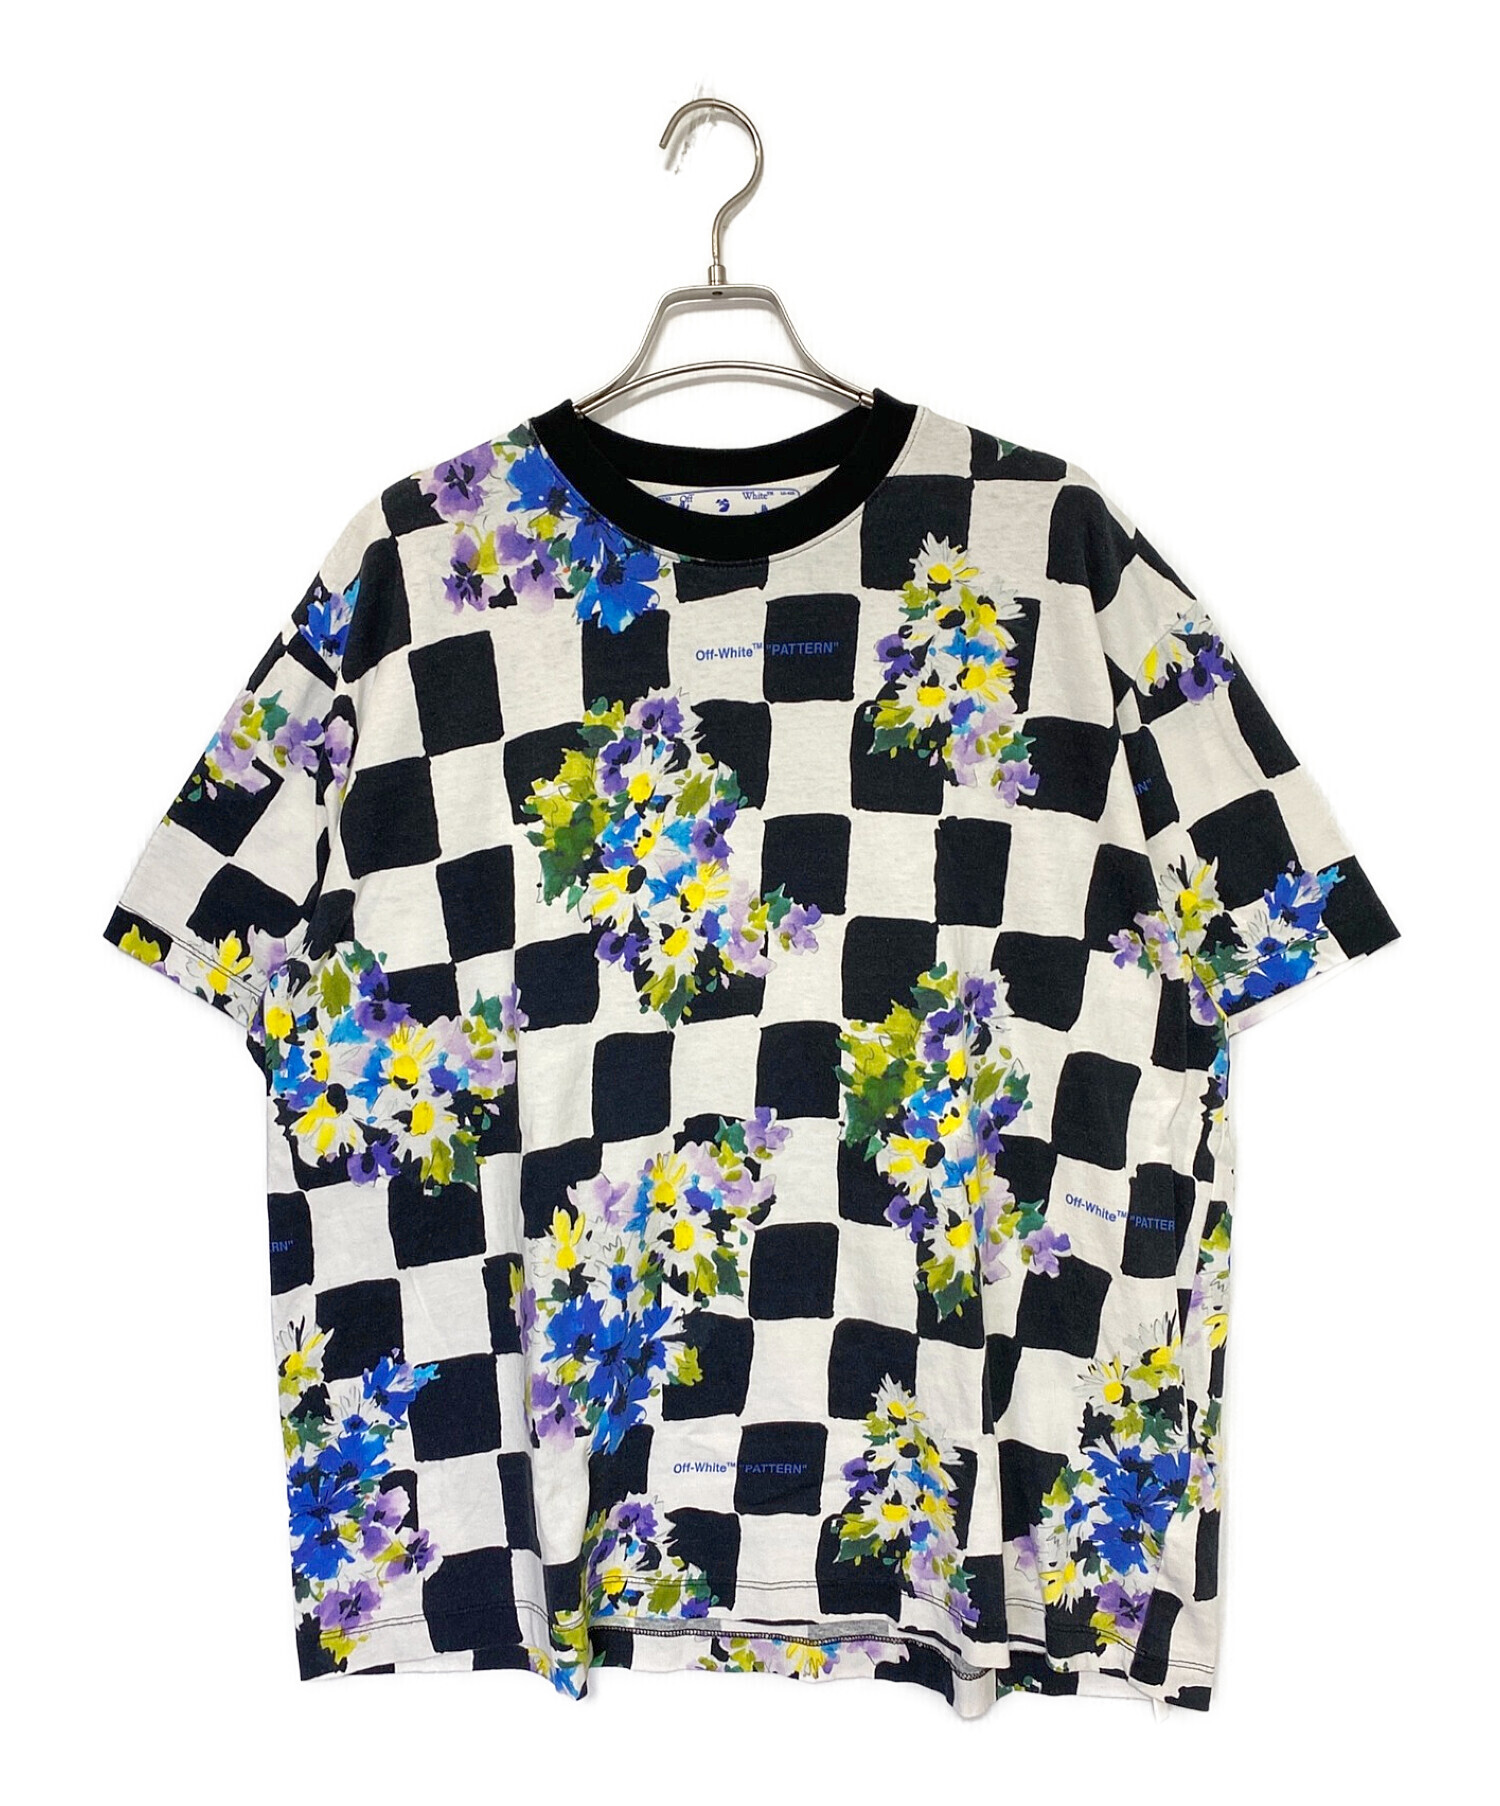 OFFWHITE (オフホワイト) Checked Flower Print T-Shirt サイズ:S